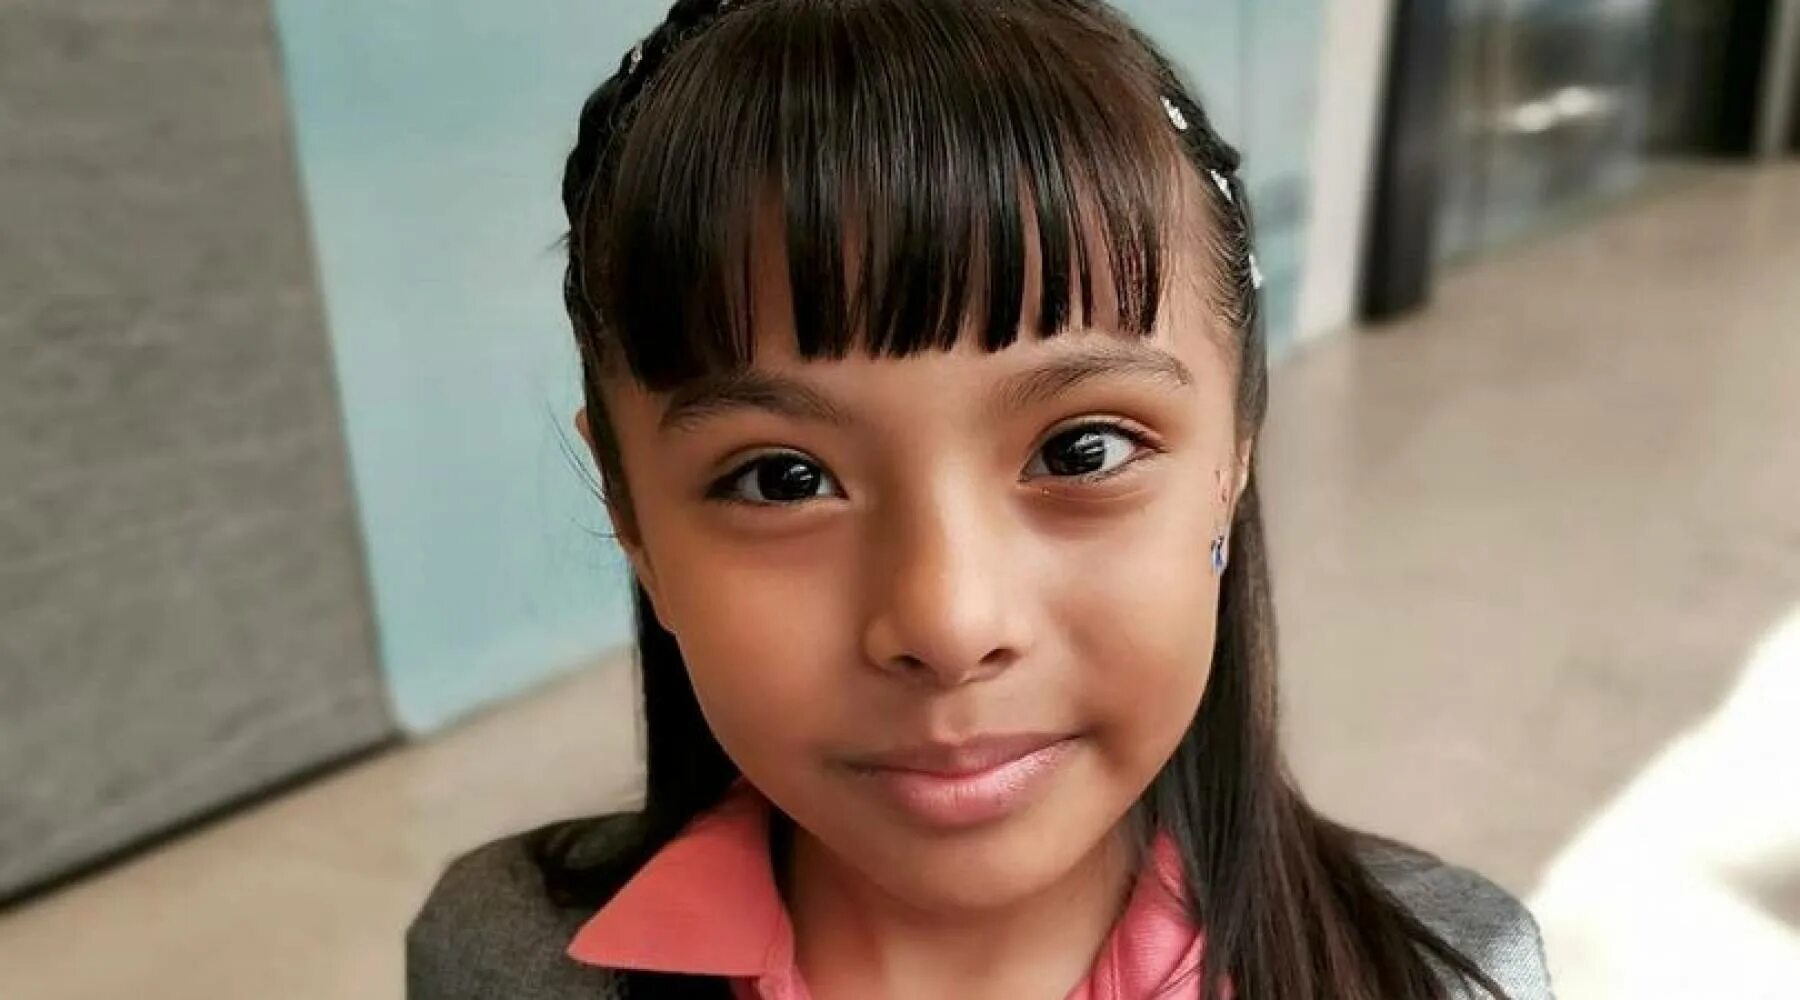 10 летняя девочка математик. Адхара Перес Санчес. Девочка с аутизмом. Девочка из Мексики. Мексикансканка девочка 10 лет.